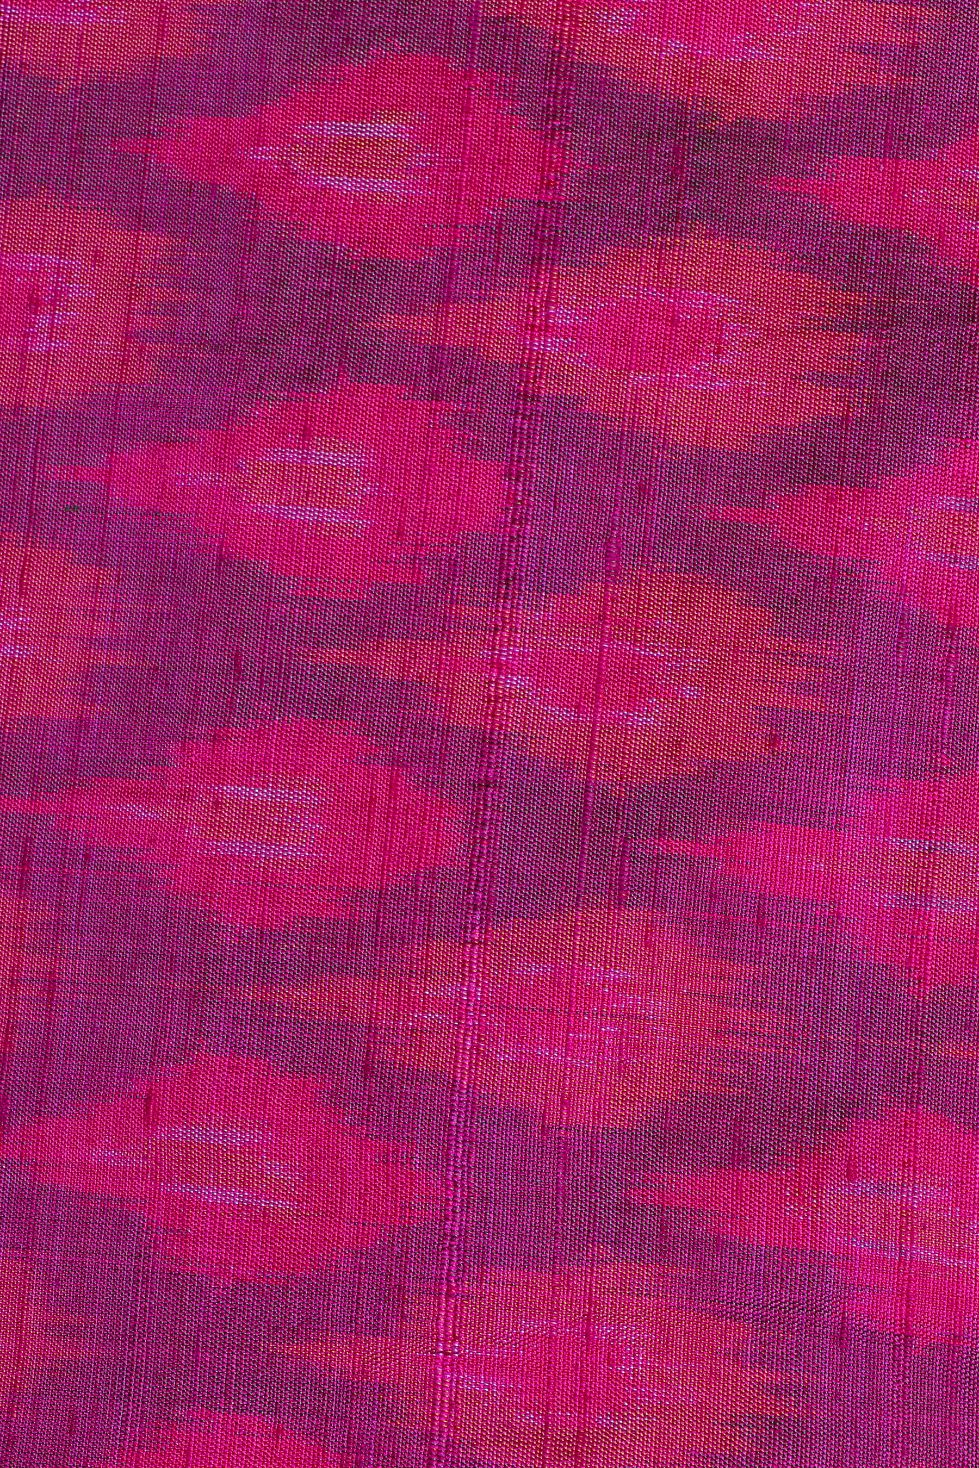 Purple Patola Silk Fabric